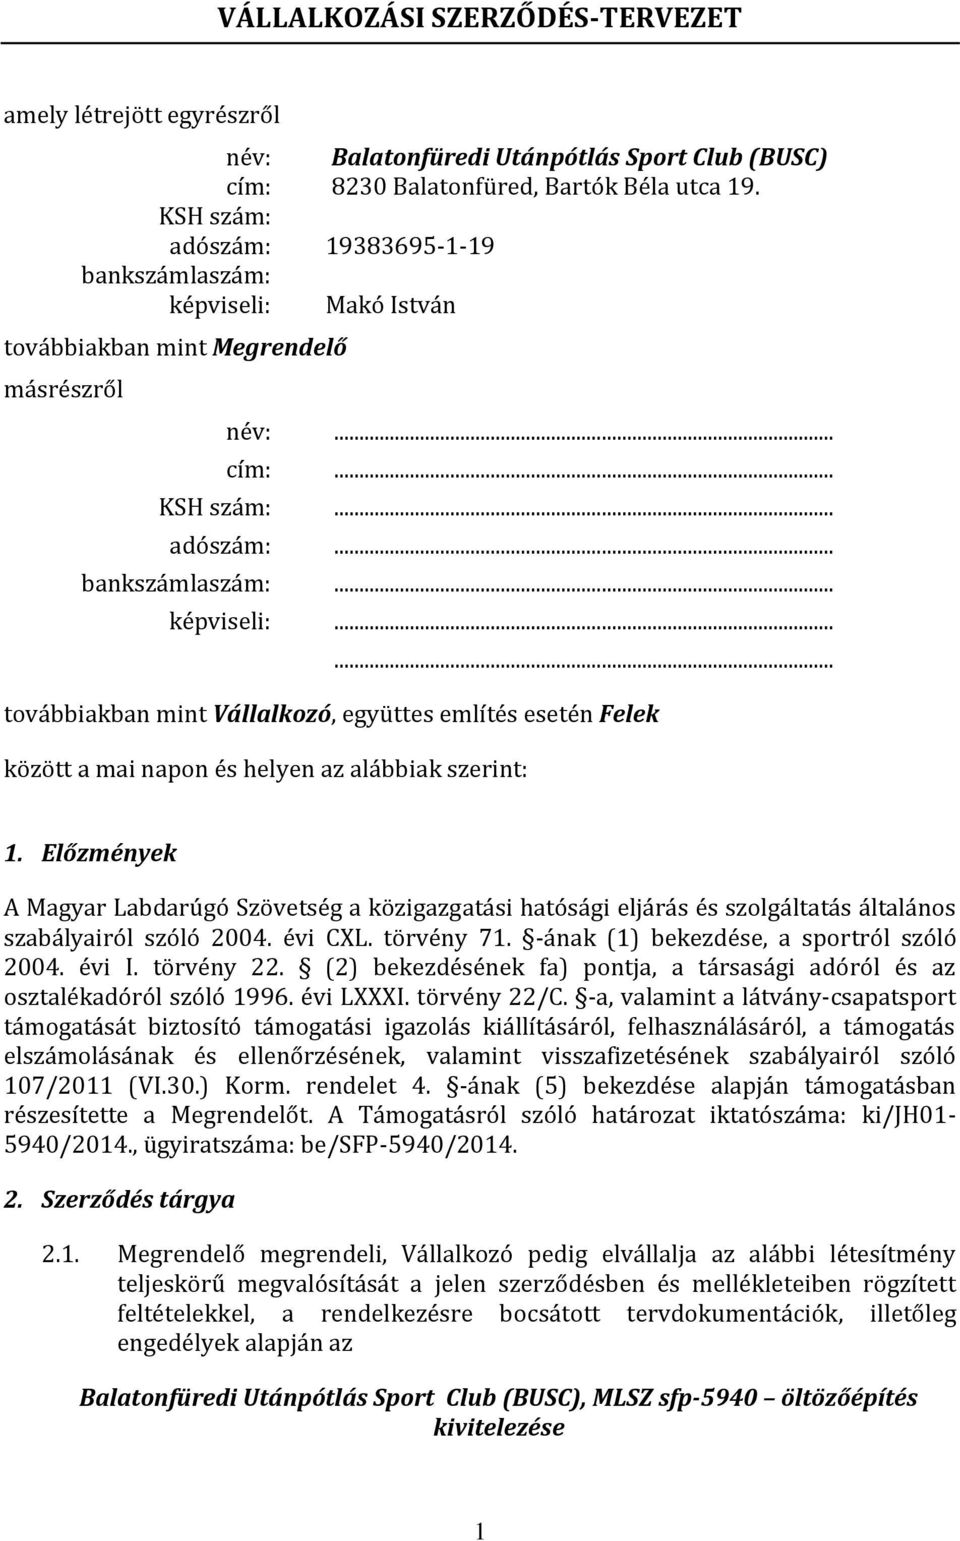 Előzmények A Magyar Labdarúgó Szövetség a közigazgatási hatósági eljárás és szolgáltatás általános szabályairól szóló 2004. évi CXL. törvény 71. -ának (1) bekezdése, a sportról szóló 2004. évi I.